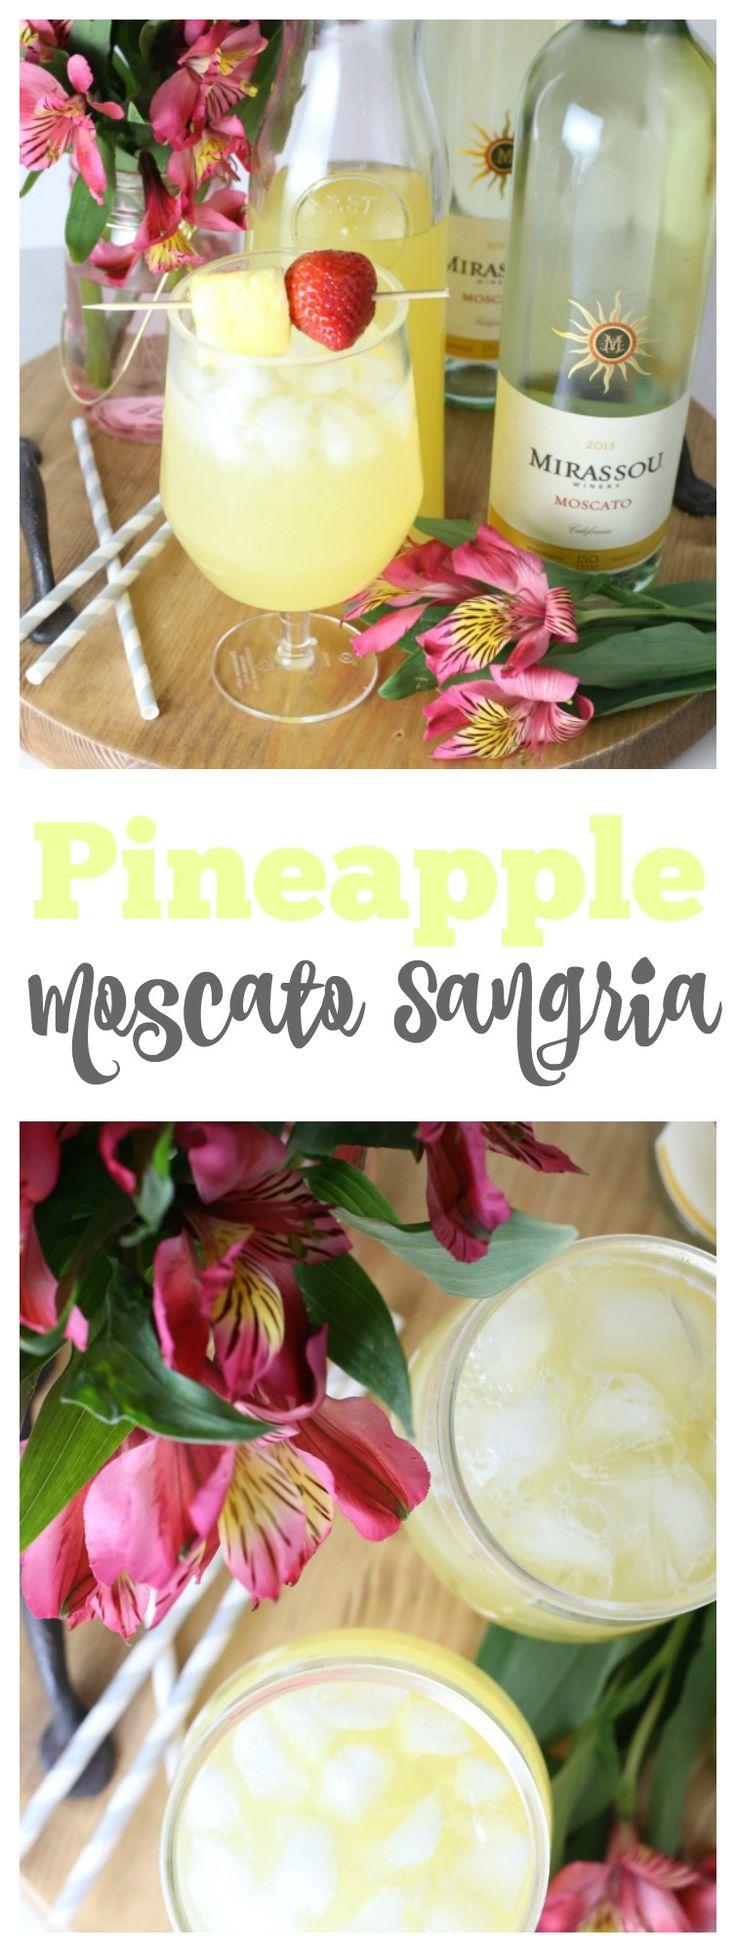 Hochzeit - Pineapple Moscato Sangria